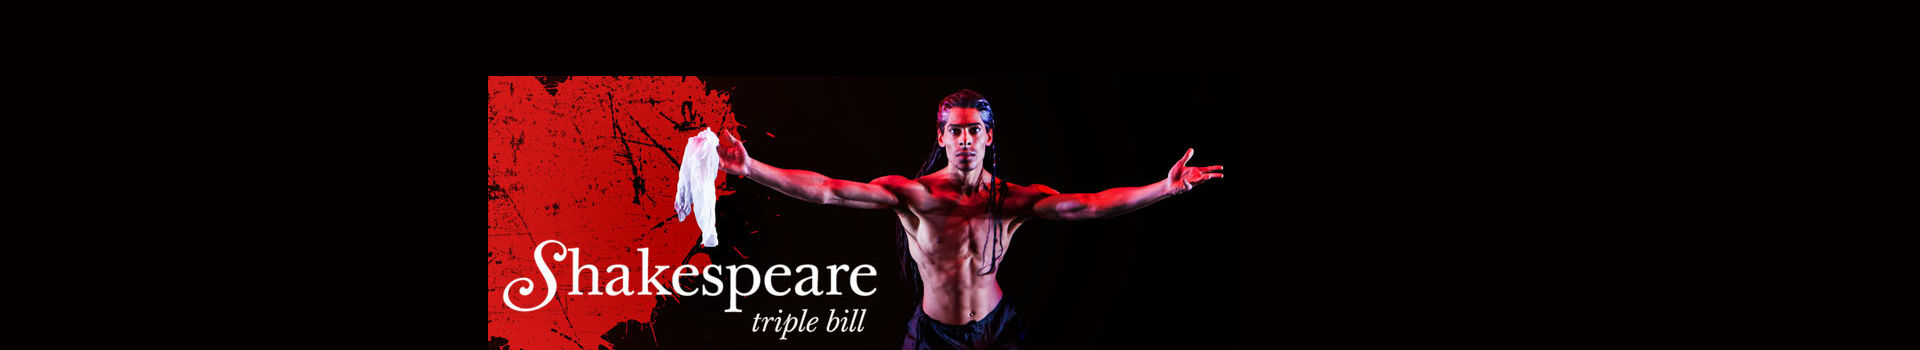 Birmingham Royal Ballet — Shakespeare Triple Bill banner image